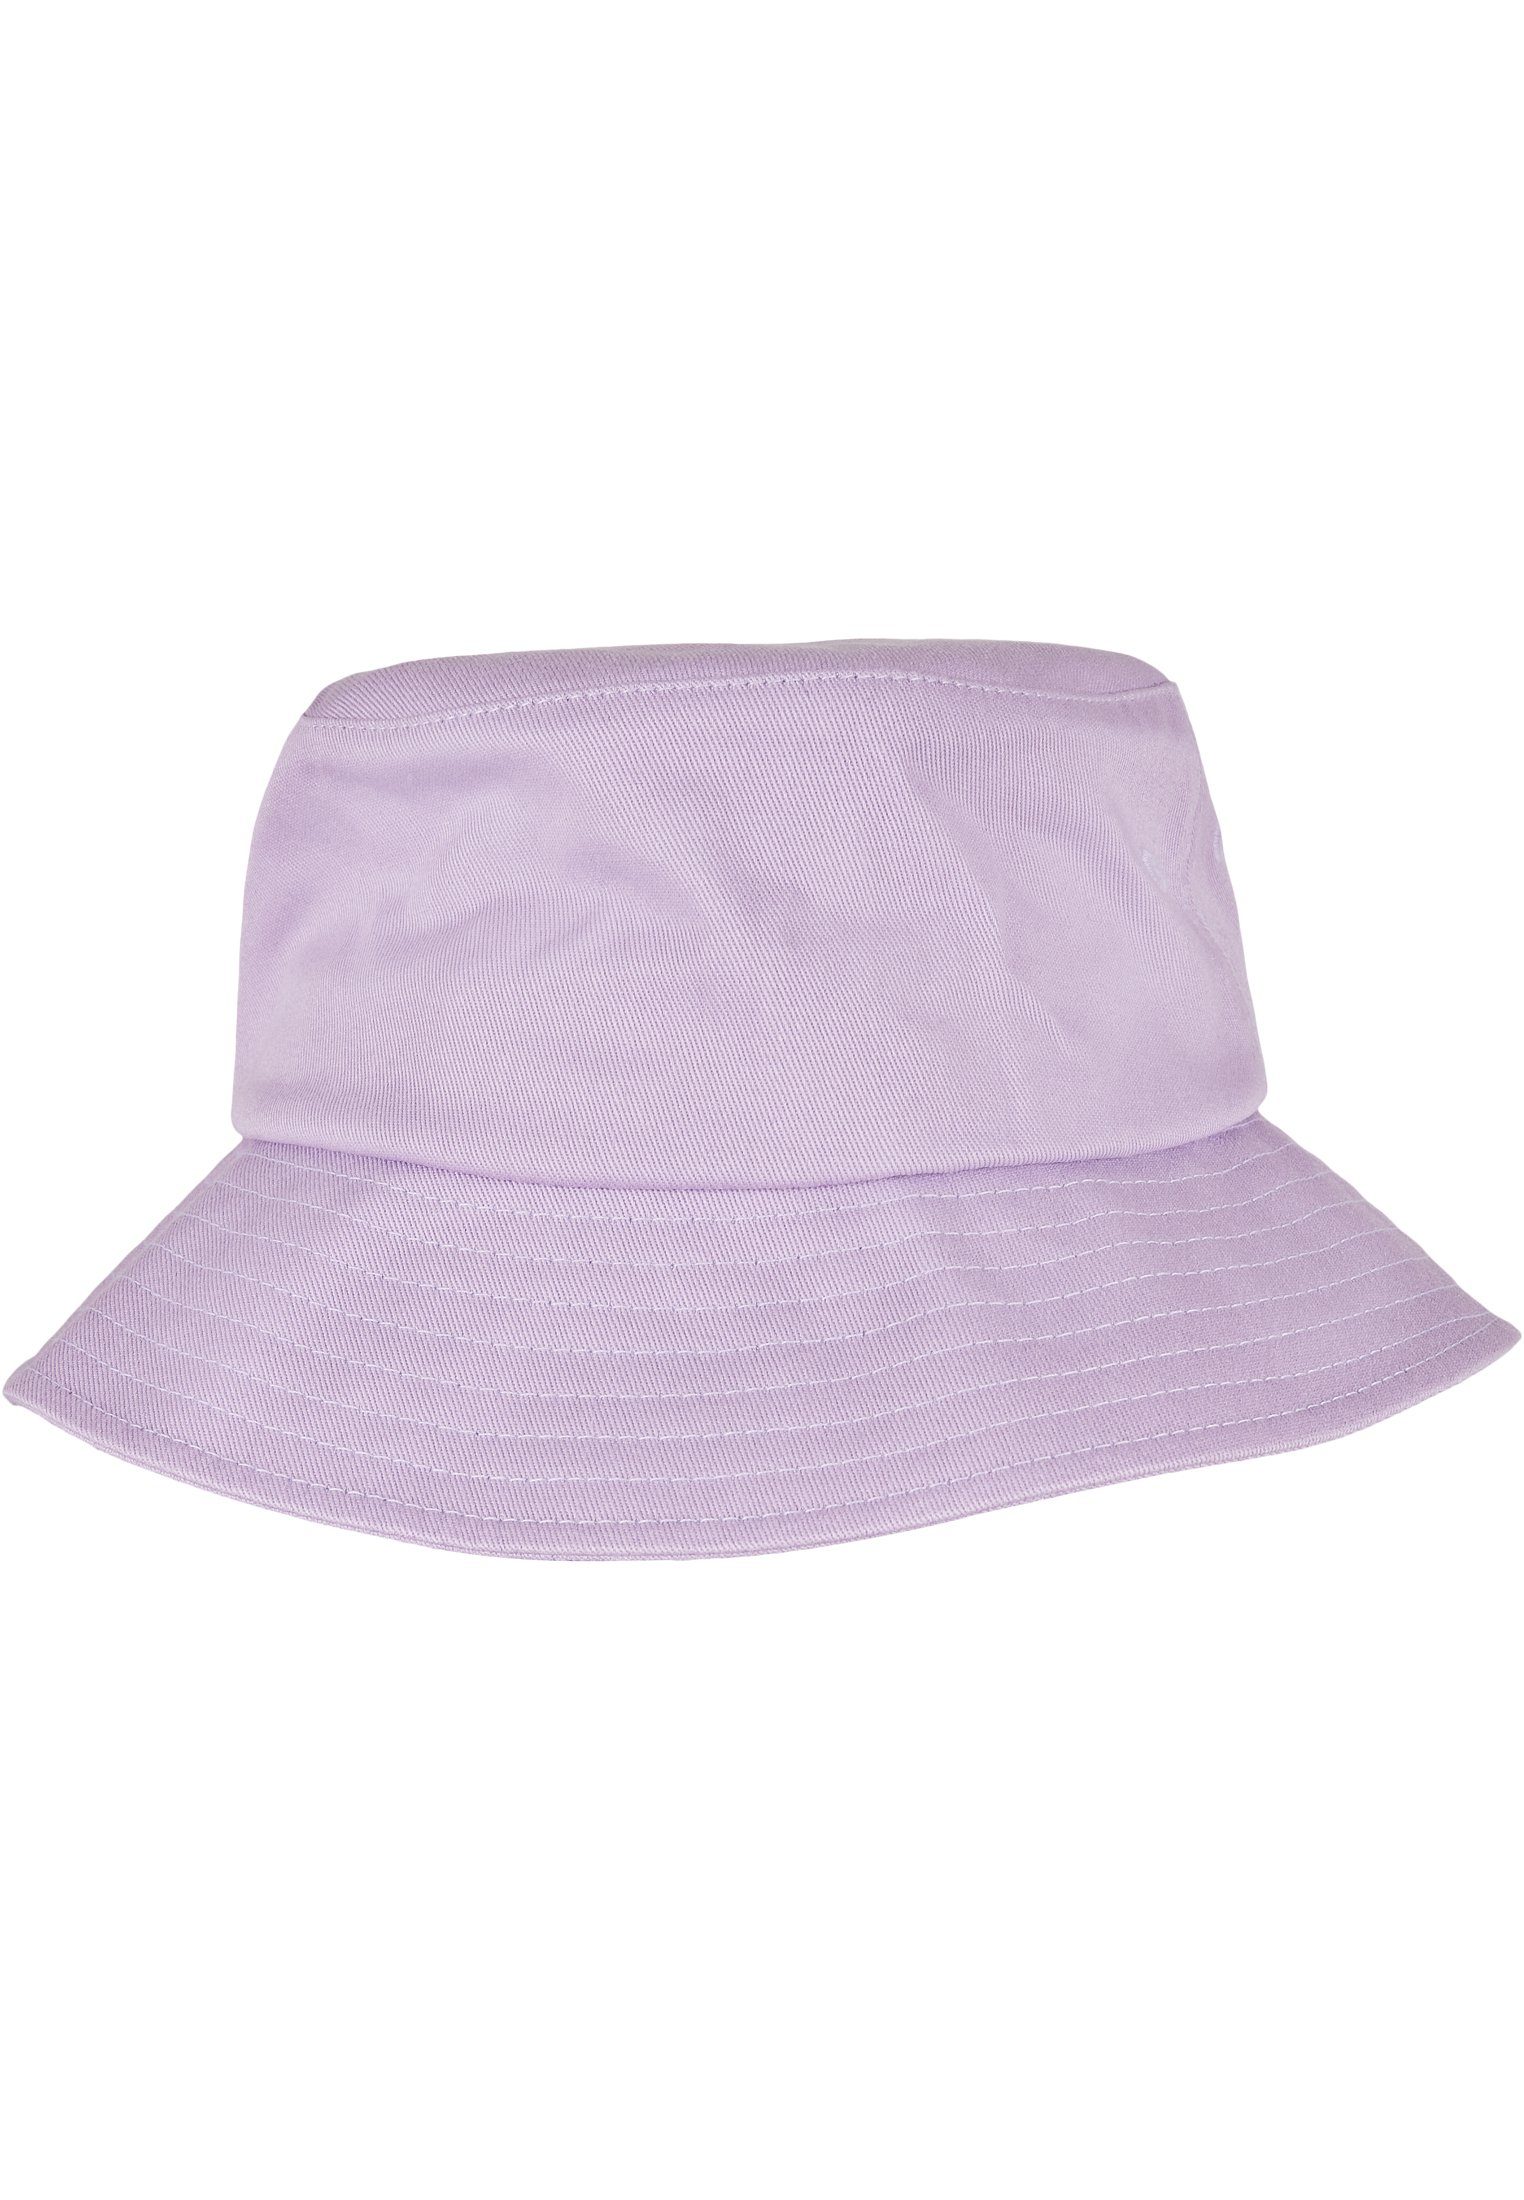 Cotton Cap Flex Hat Flexfit Twill Flexfit Accessoires lilac Bucket